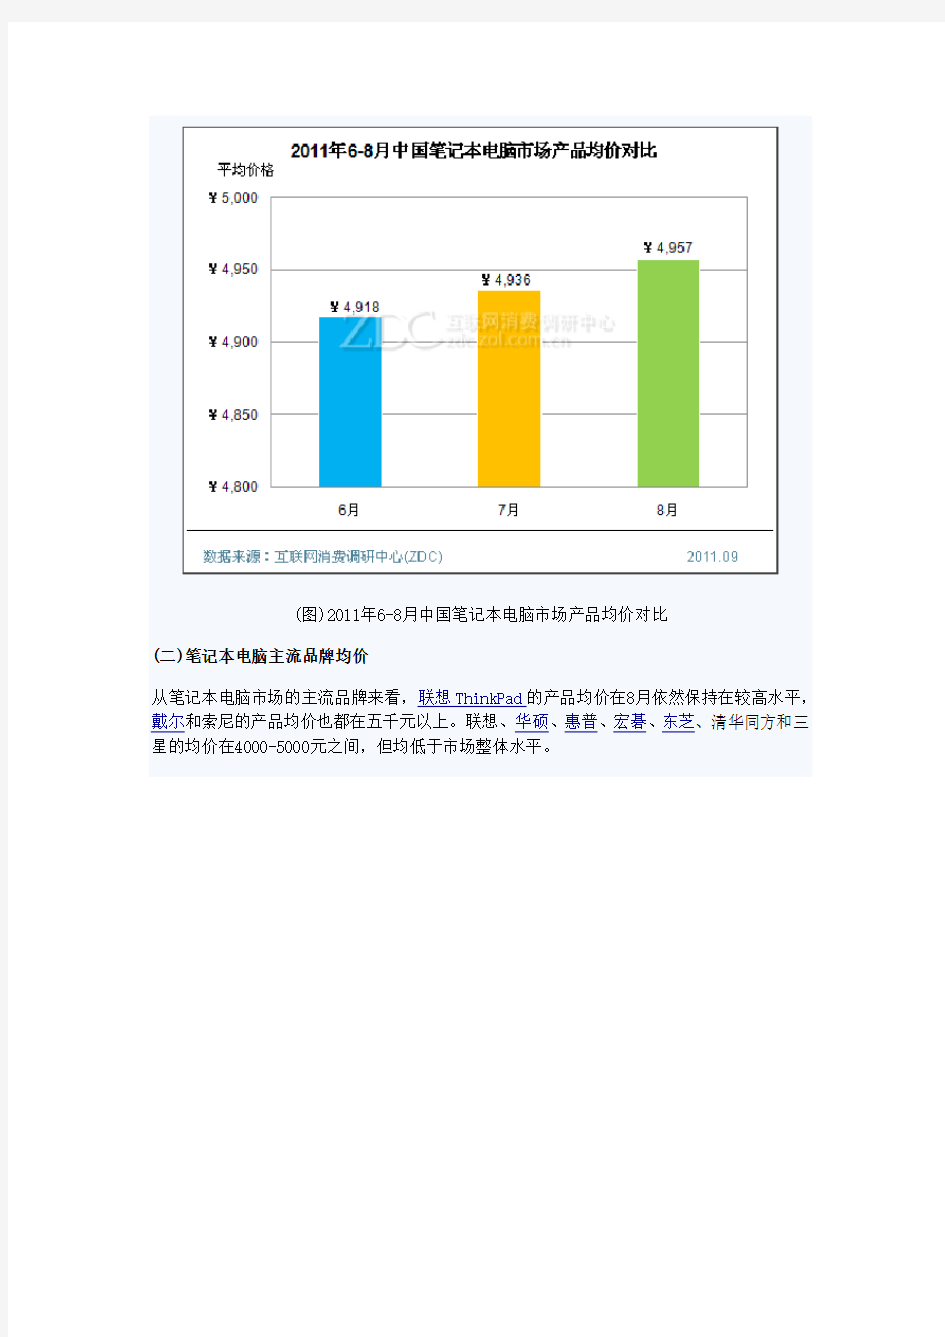 中国笔记本电脑市场价格分析报告